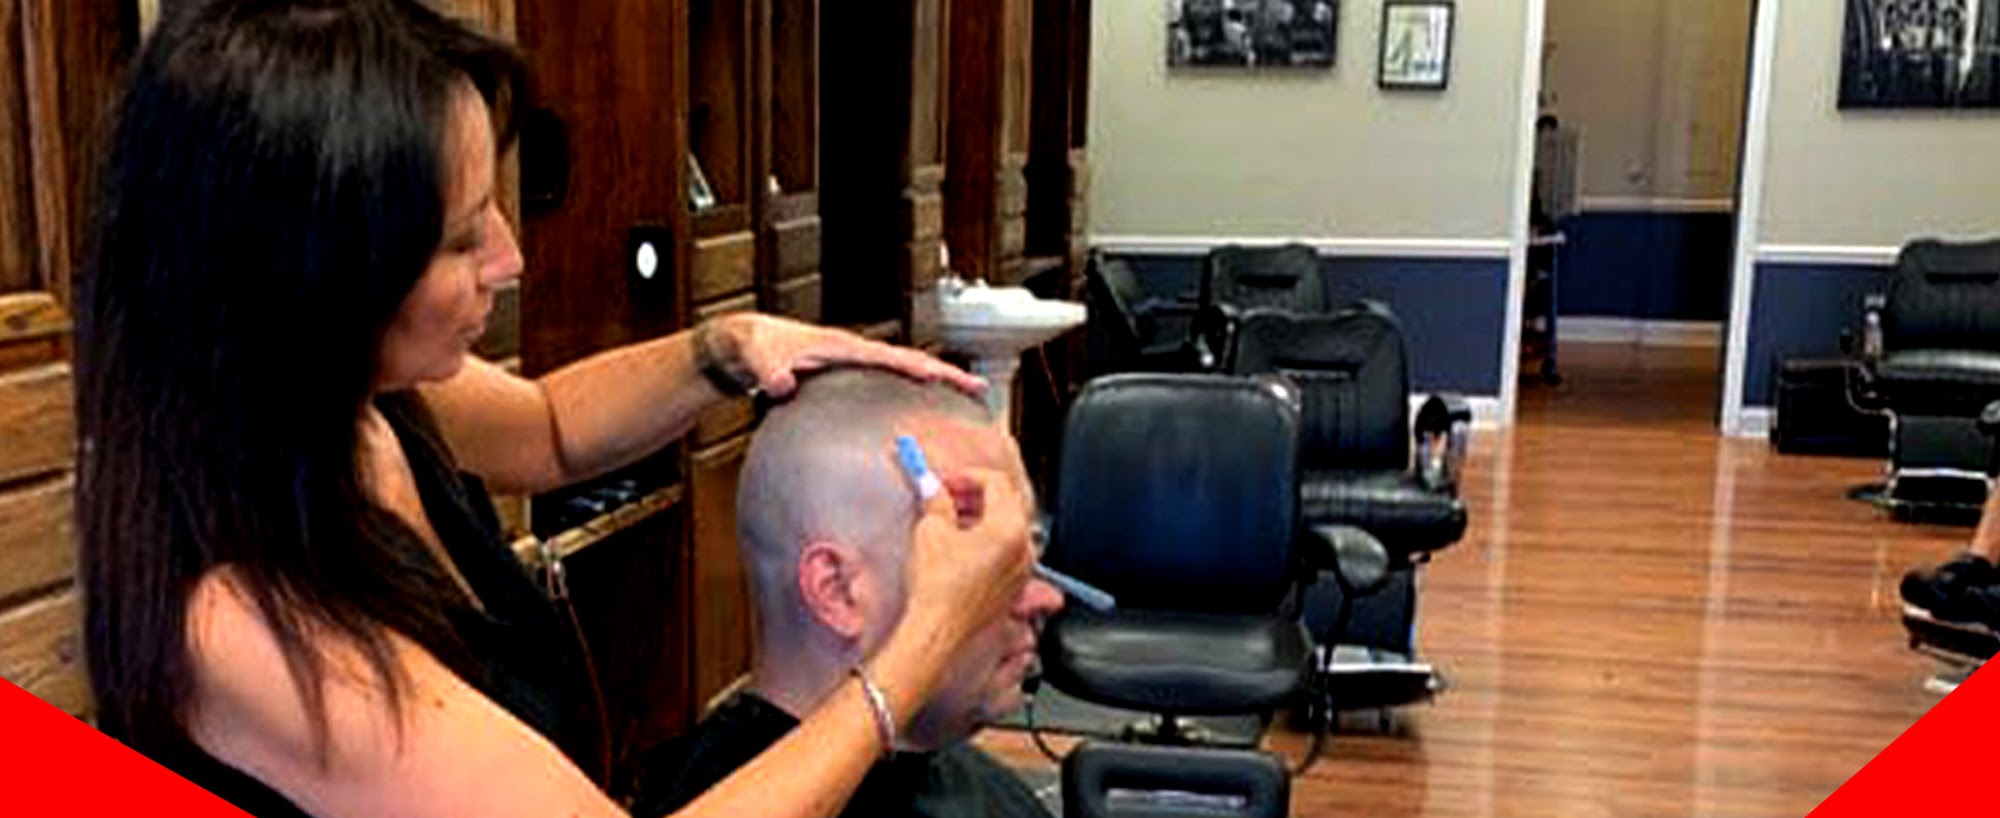 Cross Cuts Barber Shop